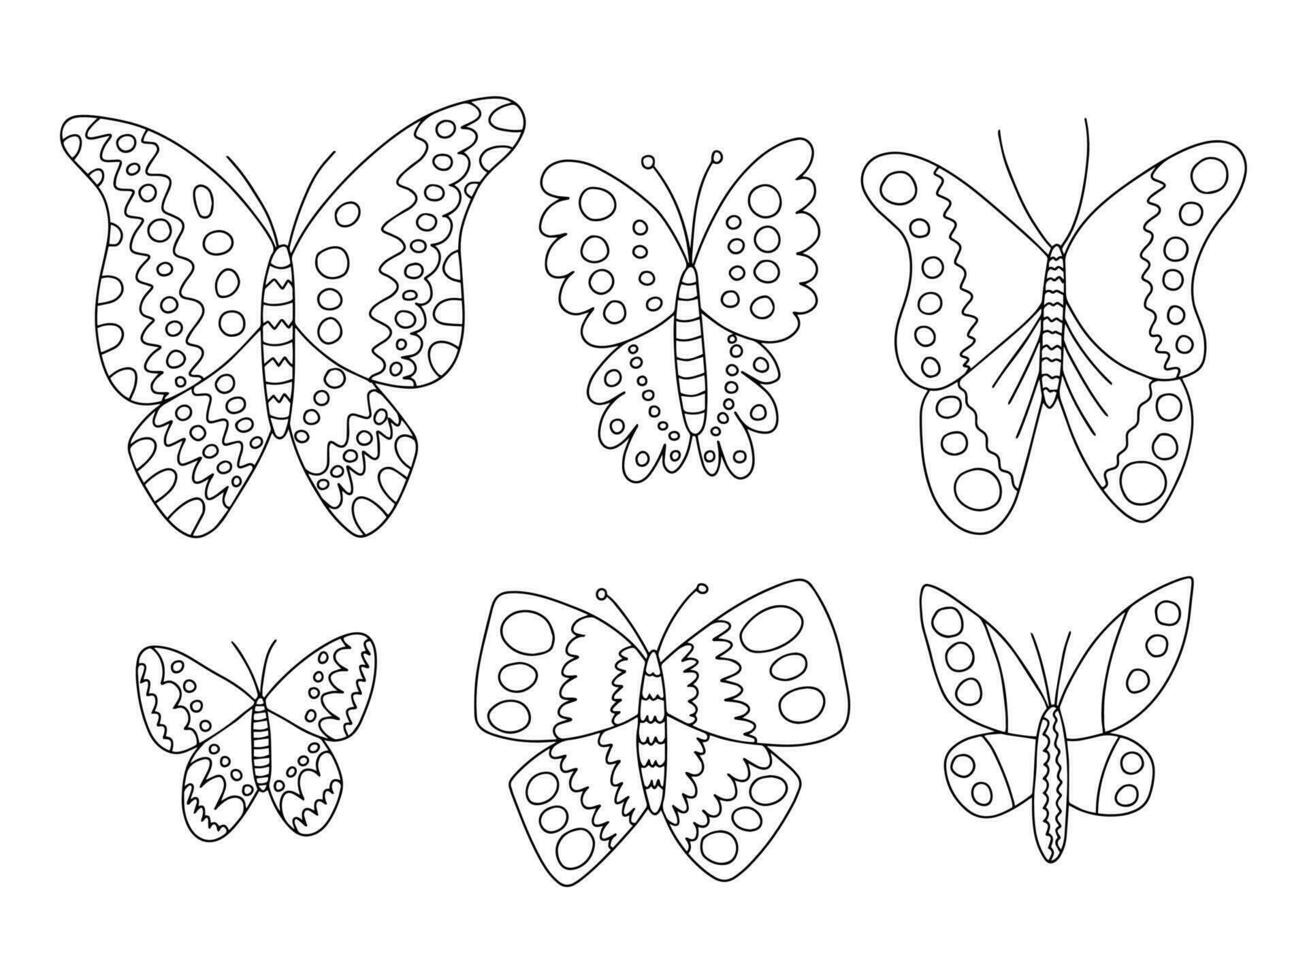 anders Arten Schmetterlinge Vektor Hand gezeichnet Satz. schwarz und Weiß Schmetterlinge Gekritzel Satz. Kohl, Pfau Schmetterling und lila Kaiser